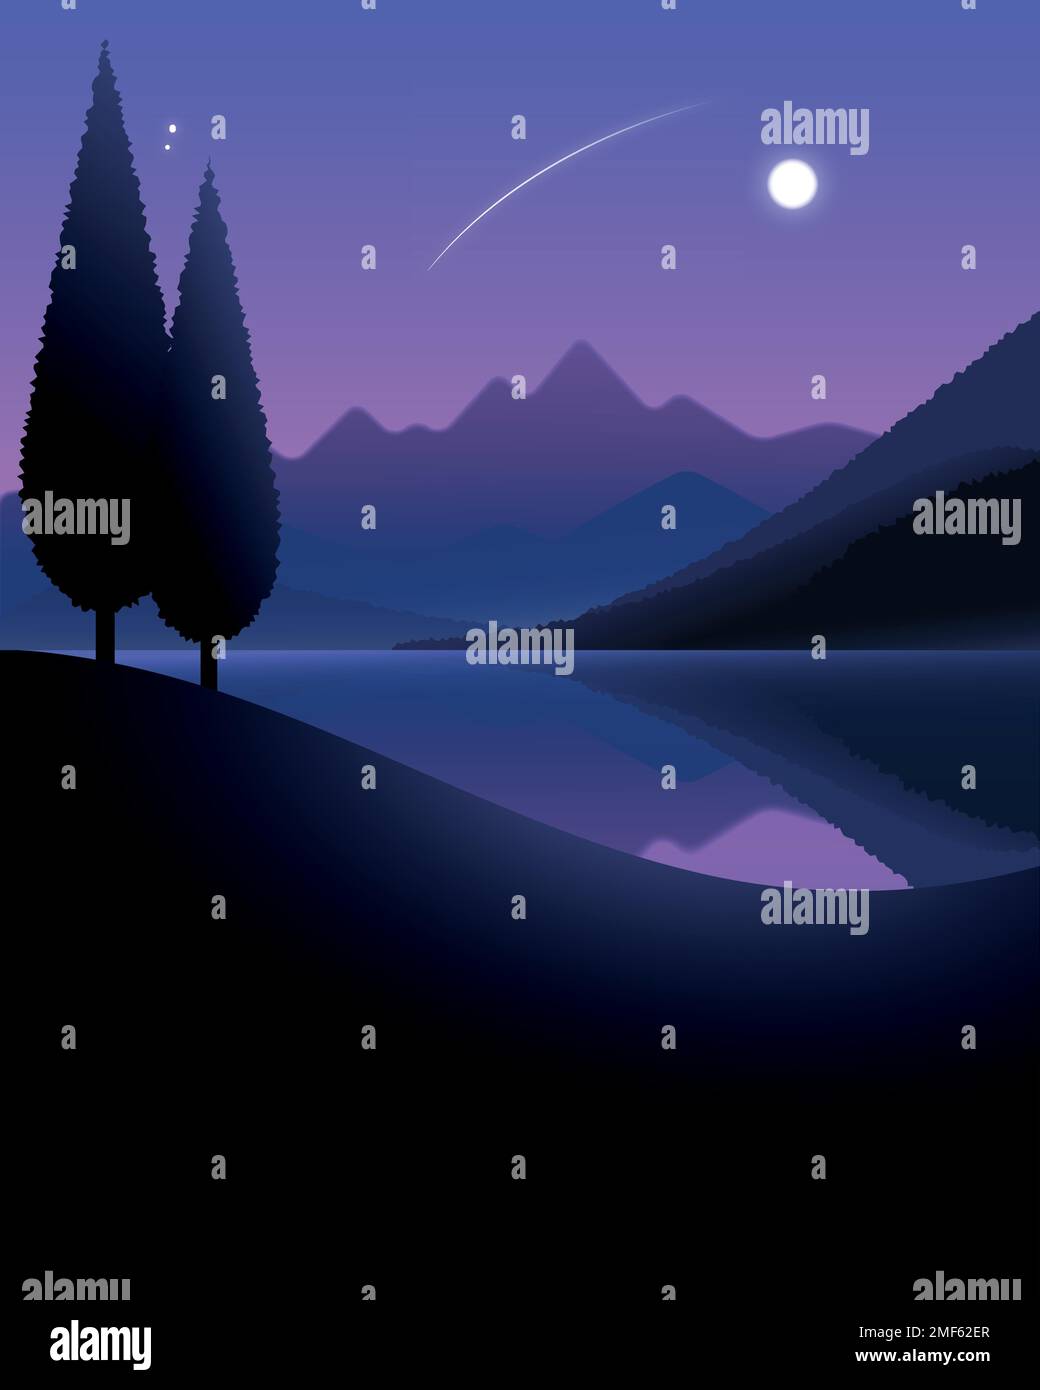 Nachtlandschaft des Sees und Berge unter dem Mond mit Bäumen im Vordergrund. Vektordarstellung. Stock Vektor